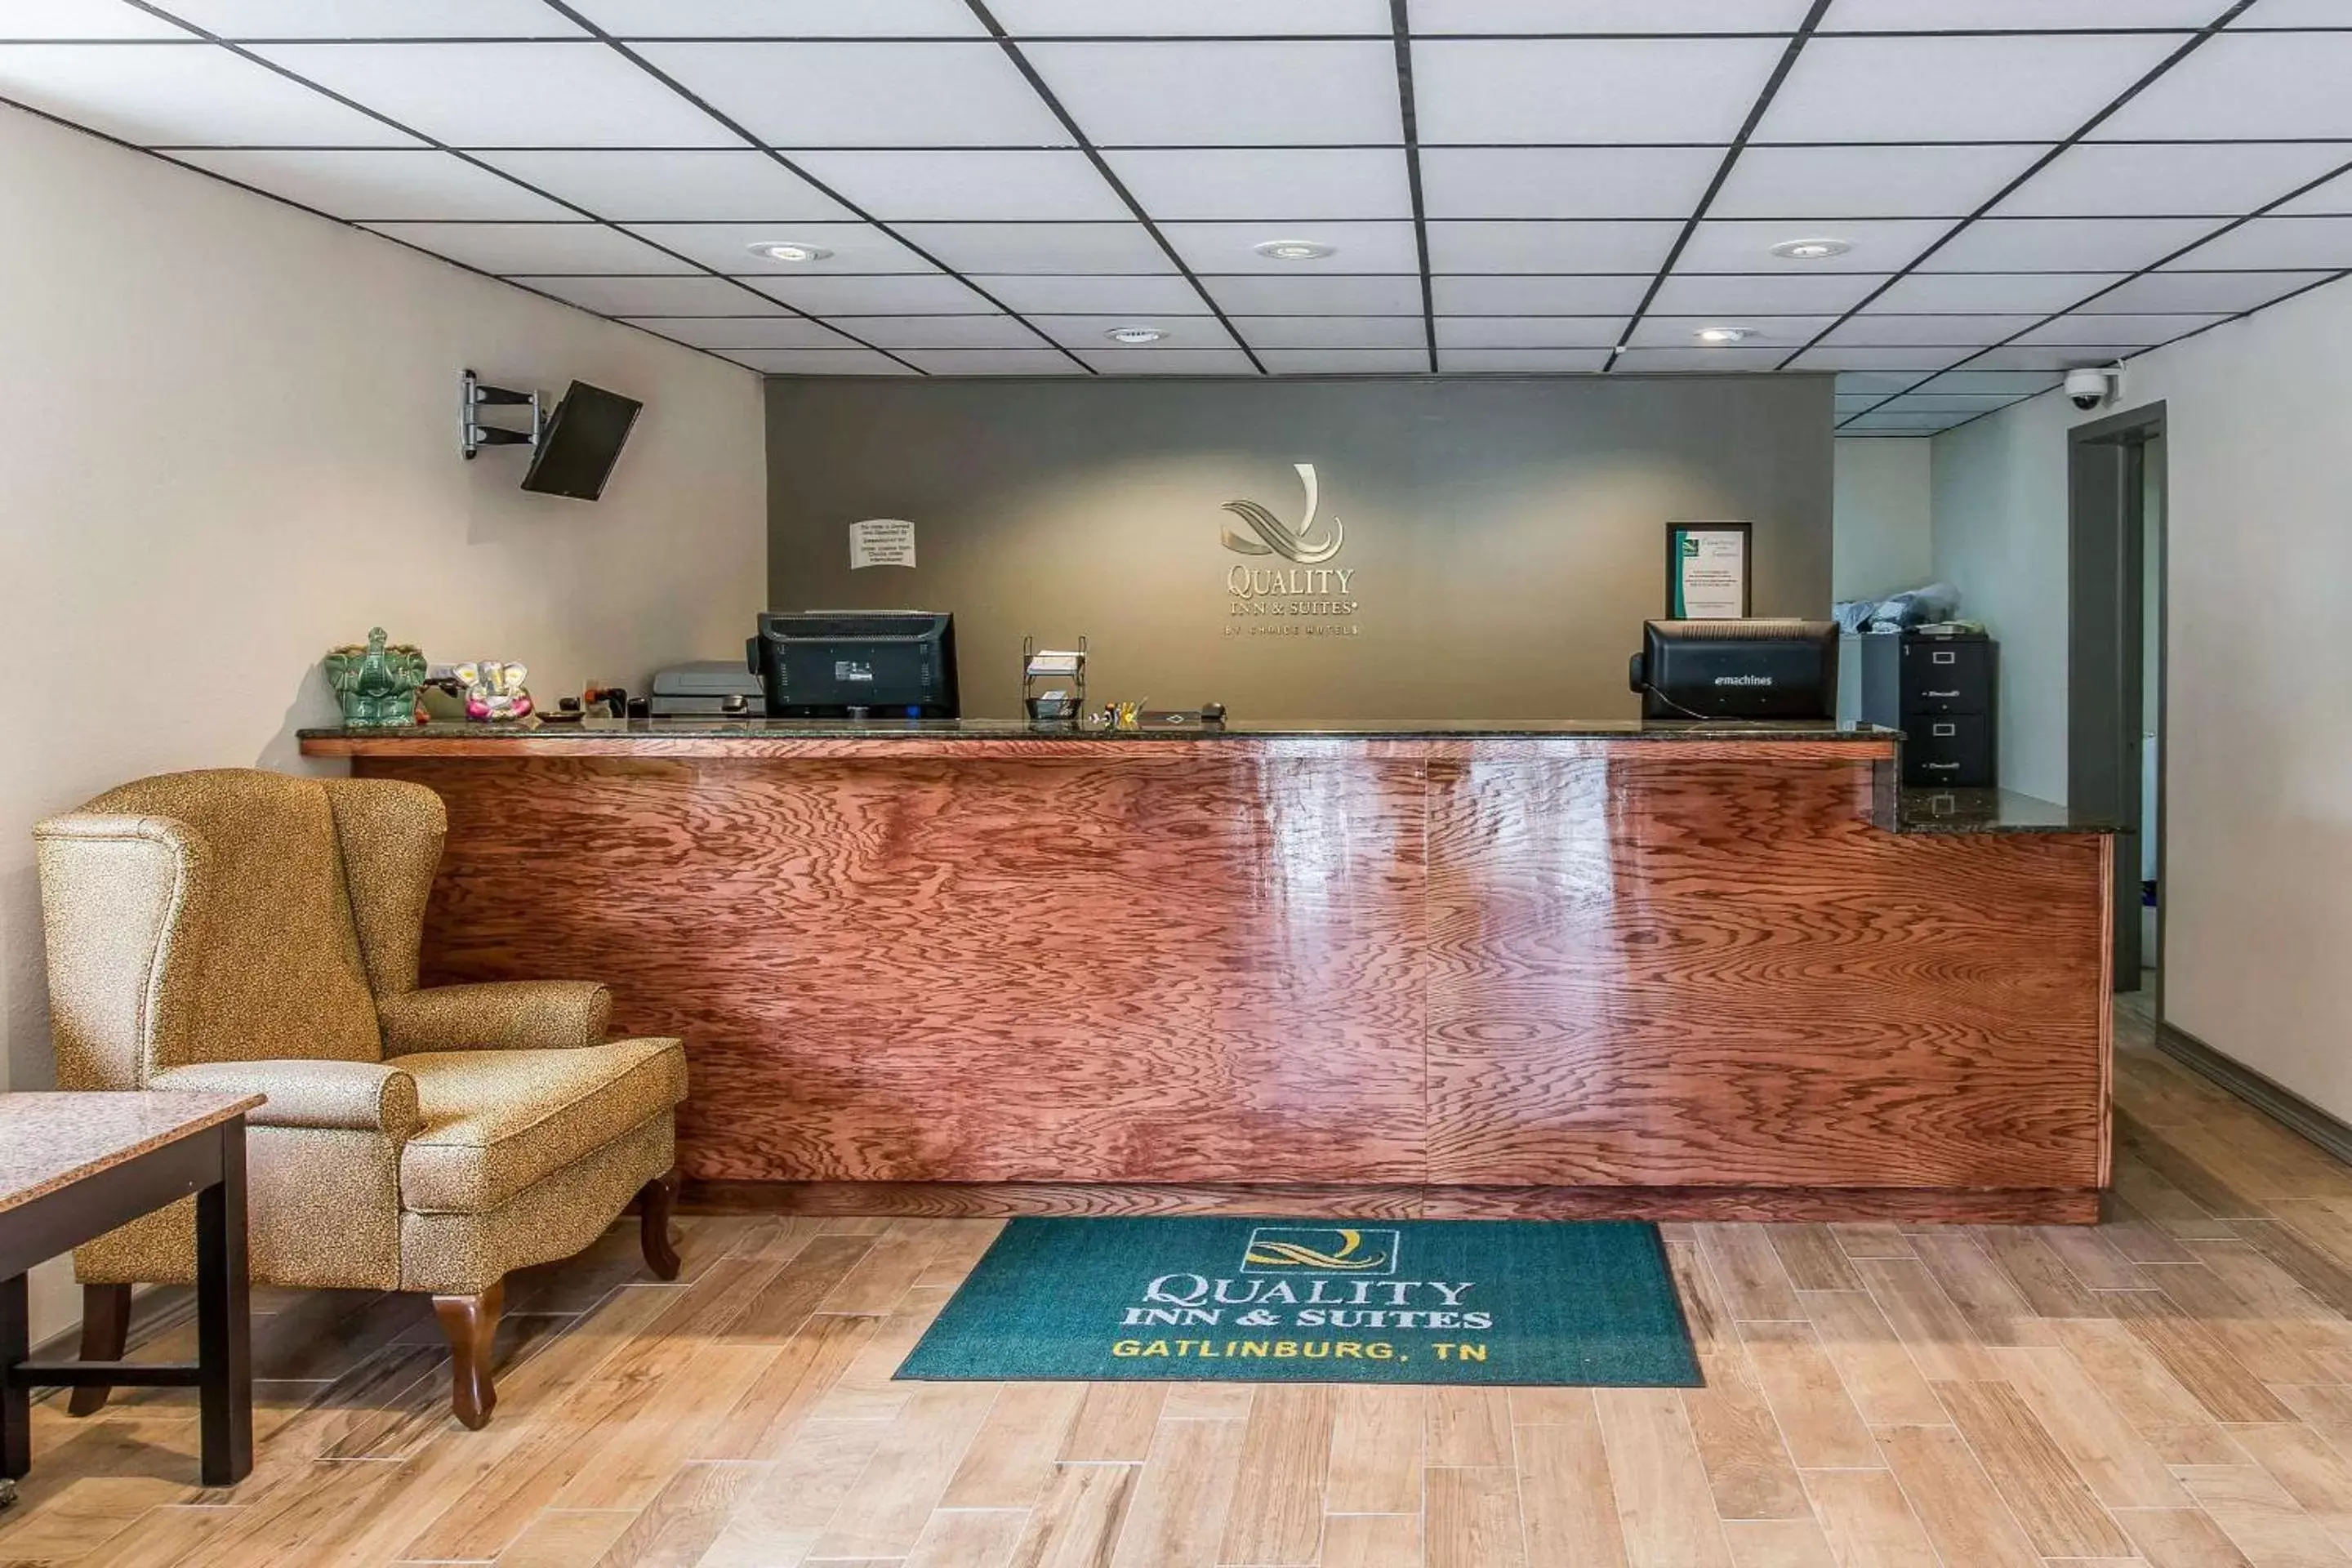 Lobby or reception, Lobby/Reception in Quality Inn & Suites Gatlinburg